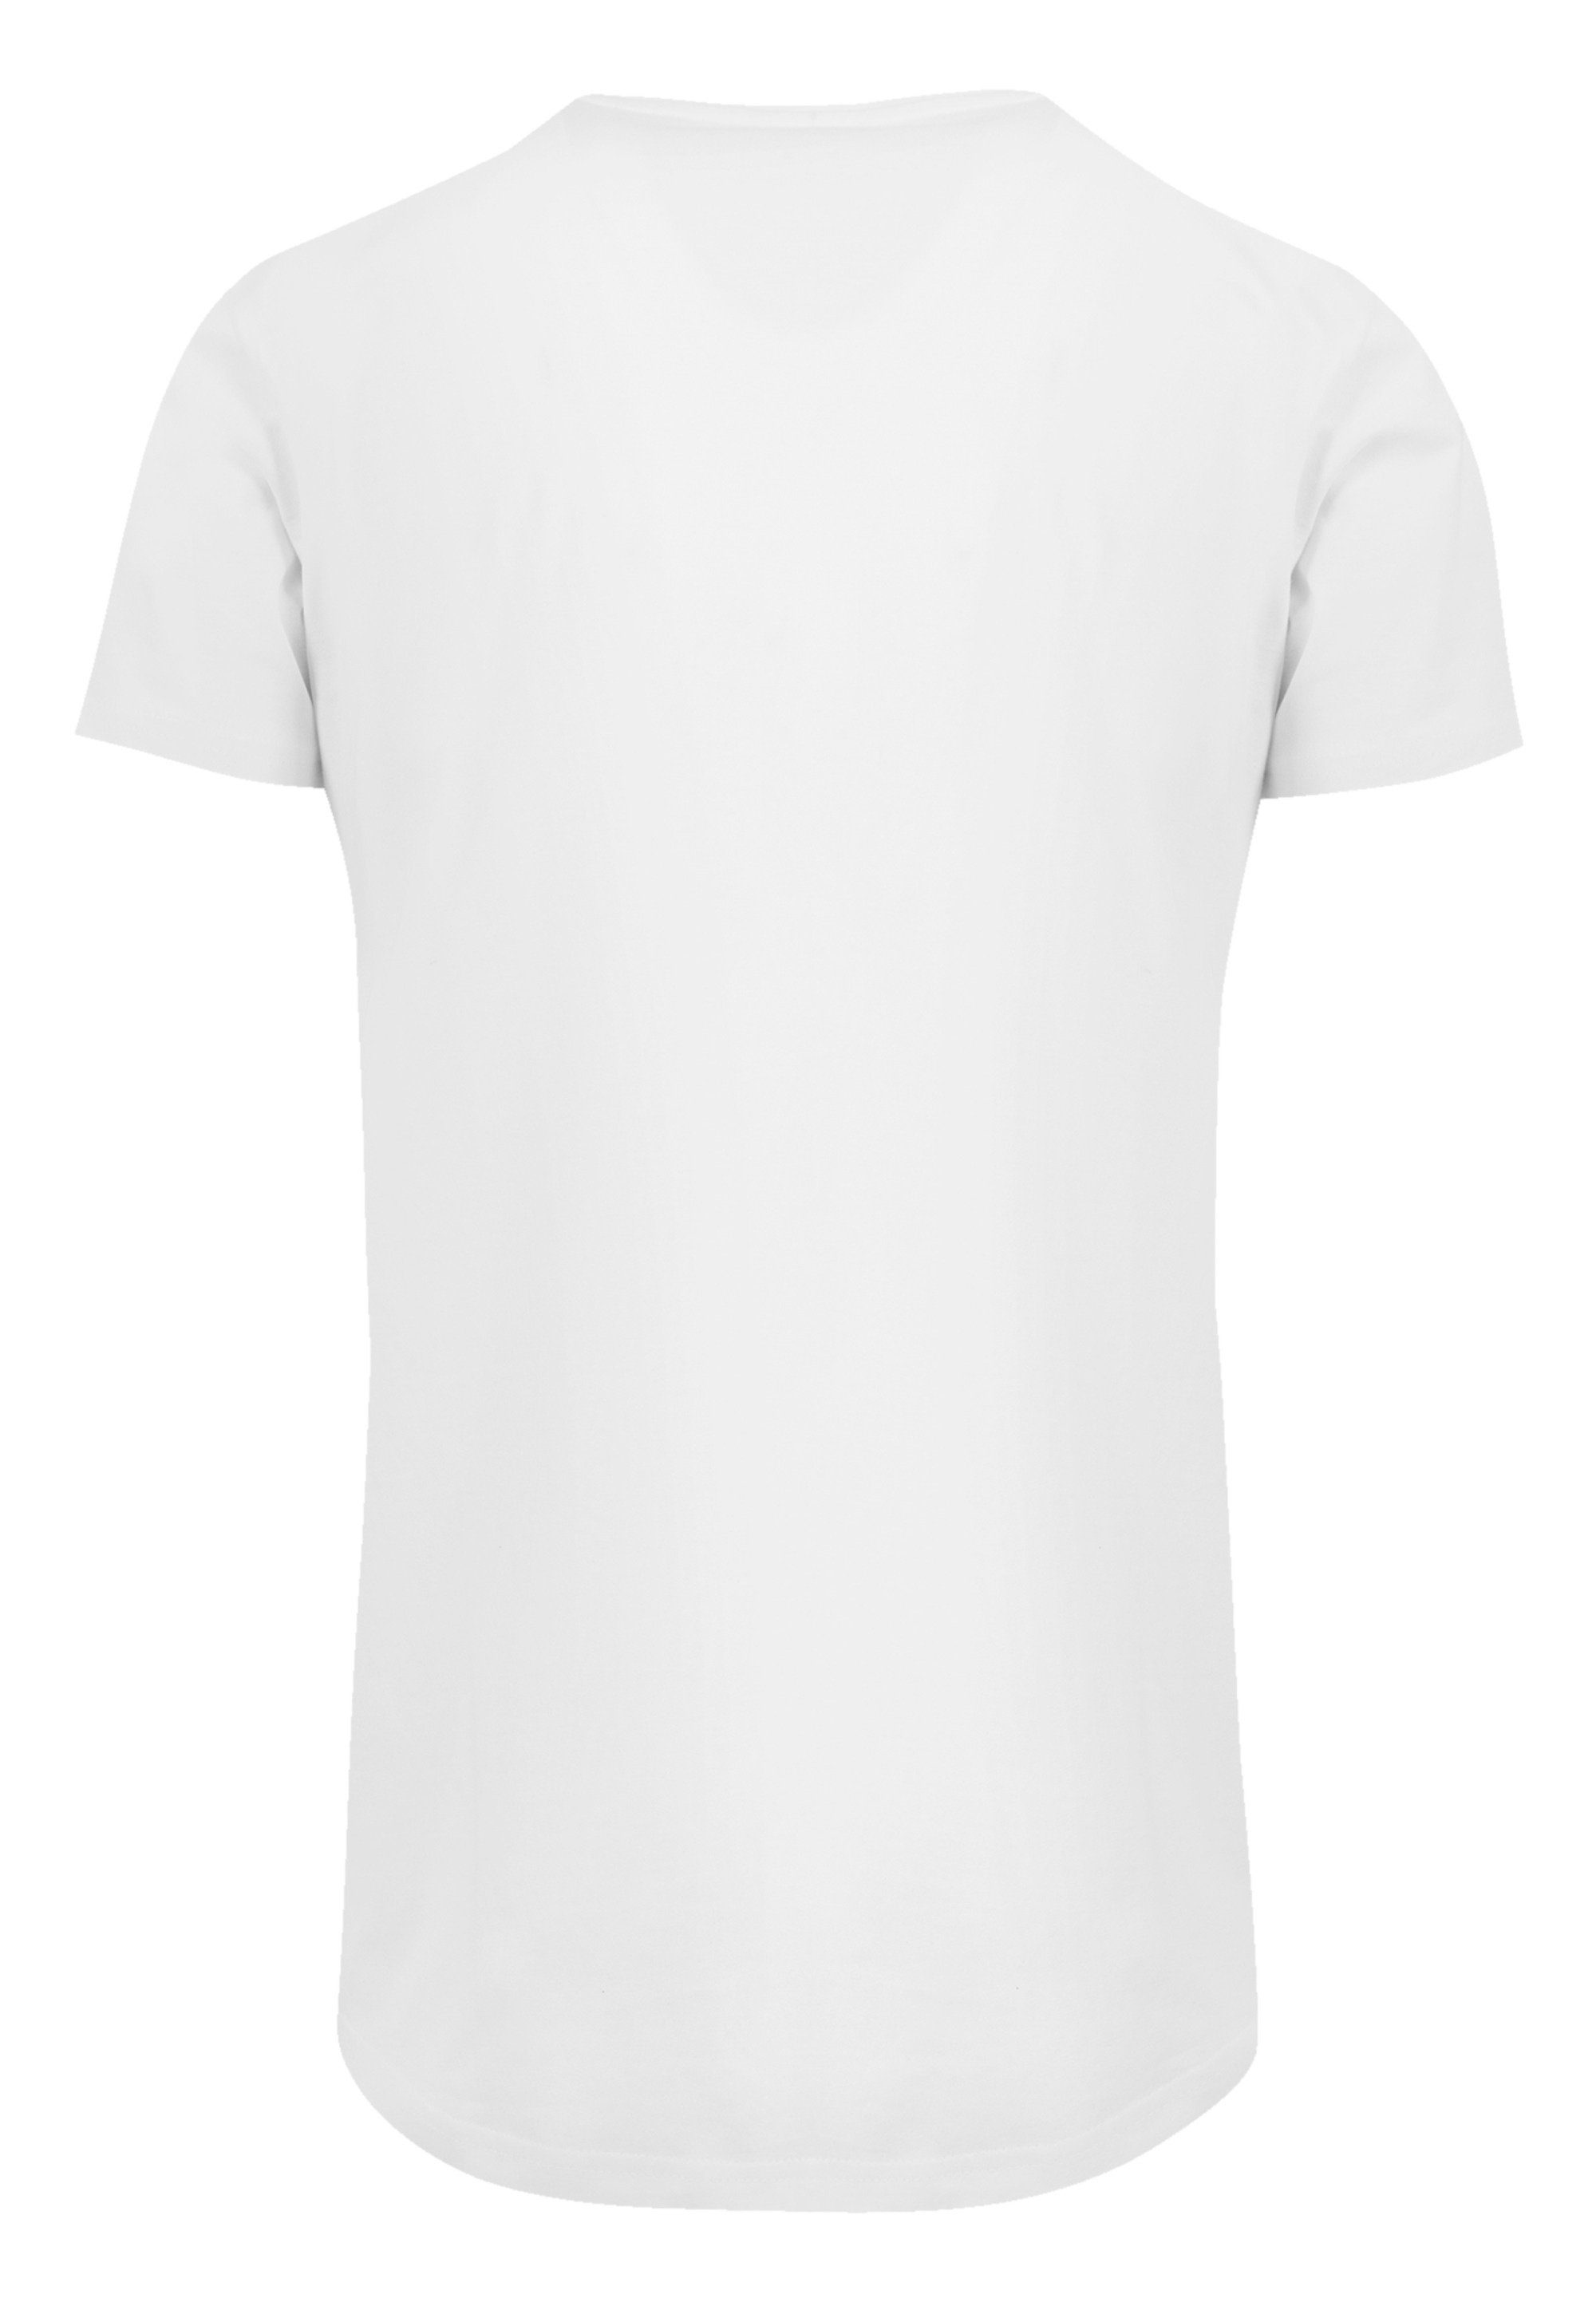 SIZE PLUS Janis weiß Pastel Joplin F4NT4STIC Logo T-Shirt Print